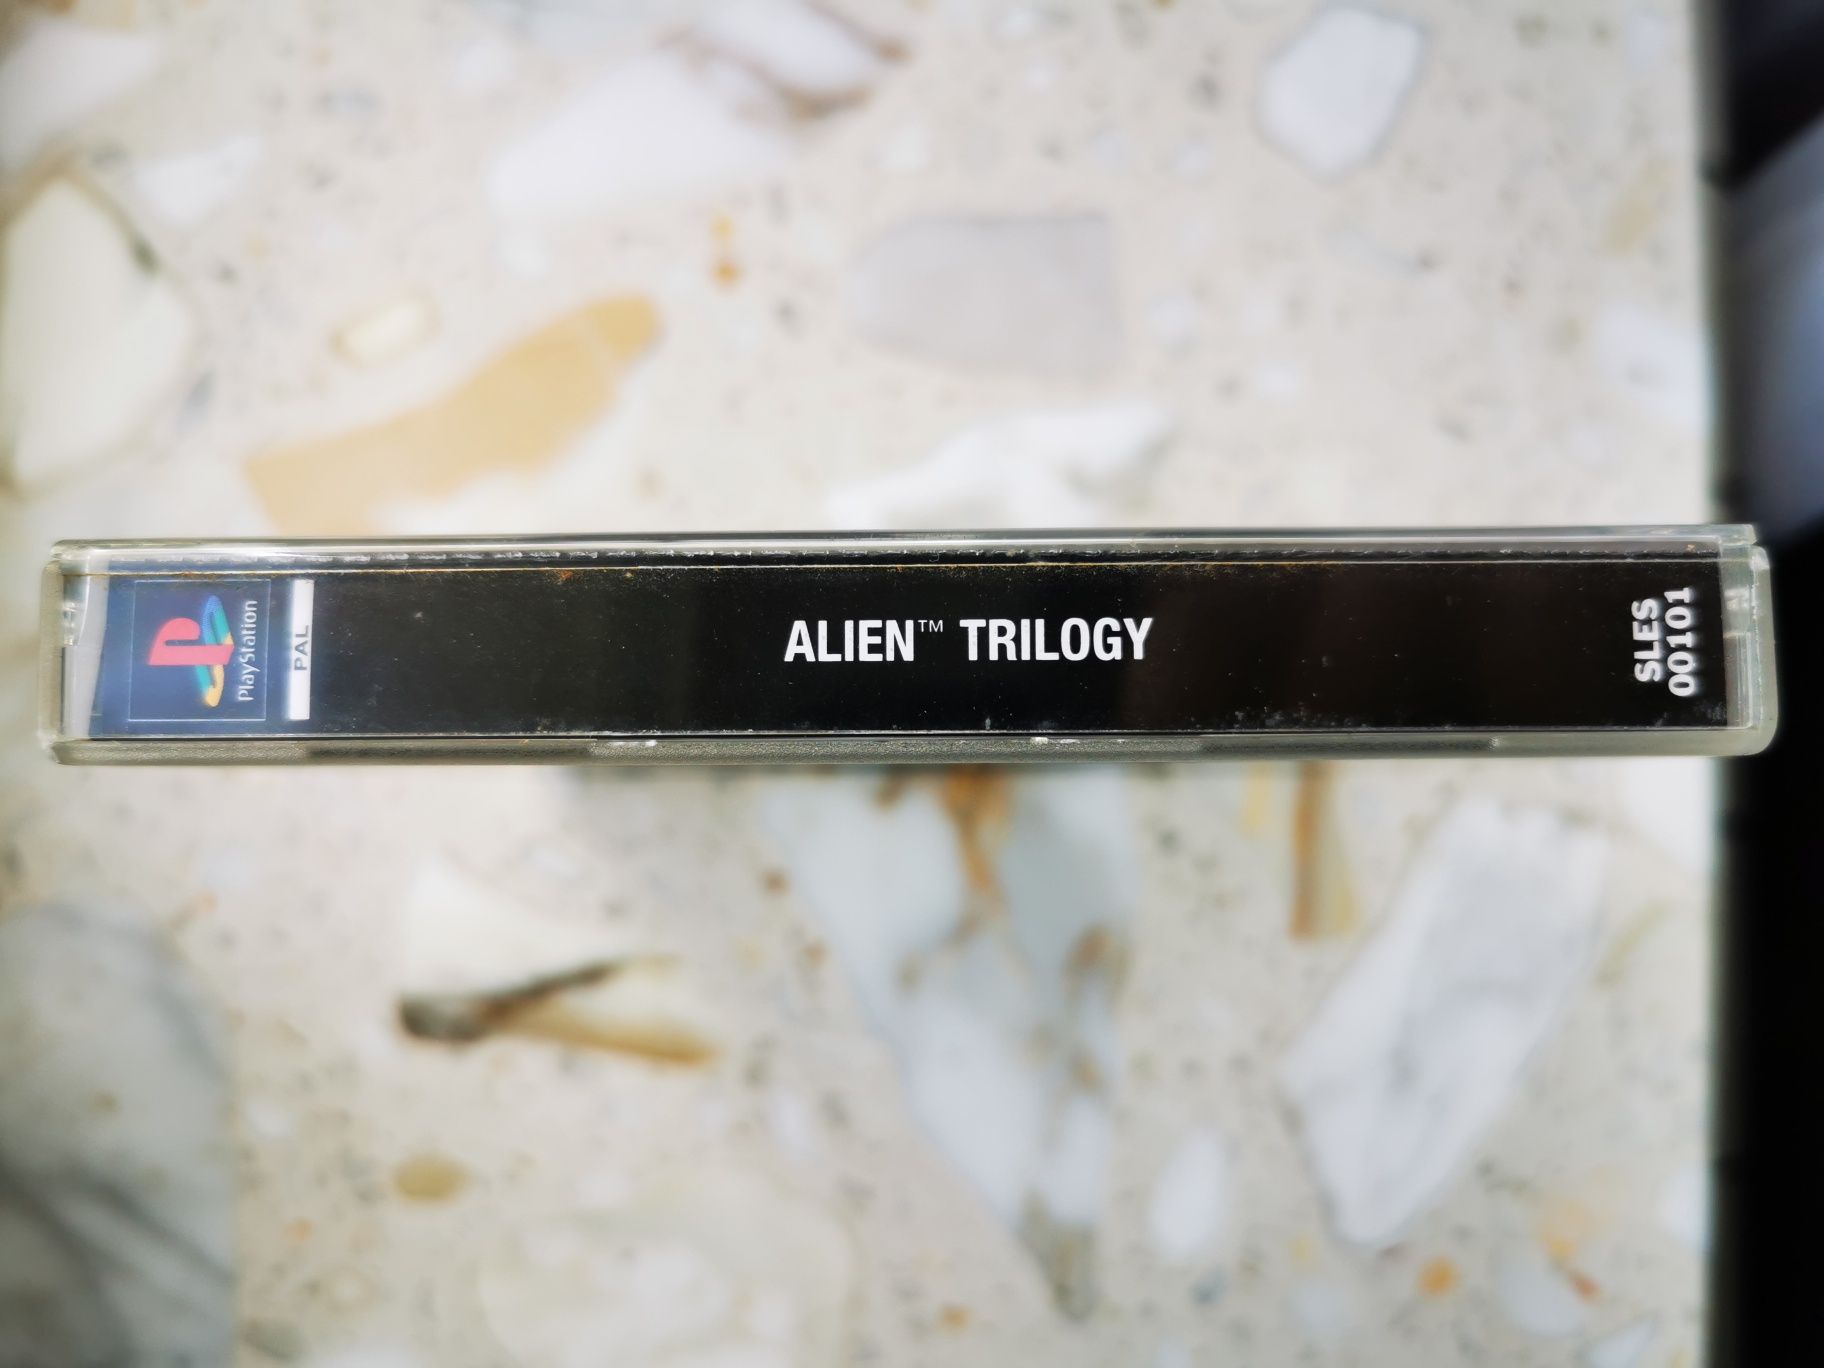 Alien Trilogy Psx PlayStation 1 3xA Super stan ENG